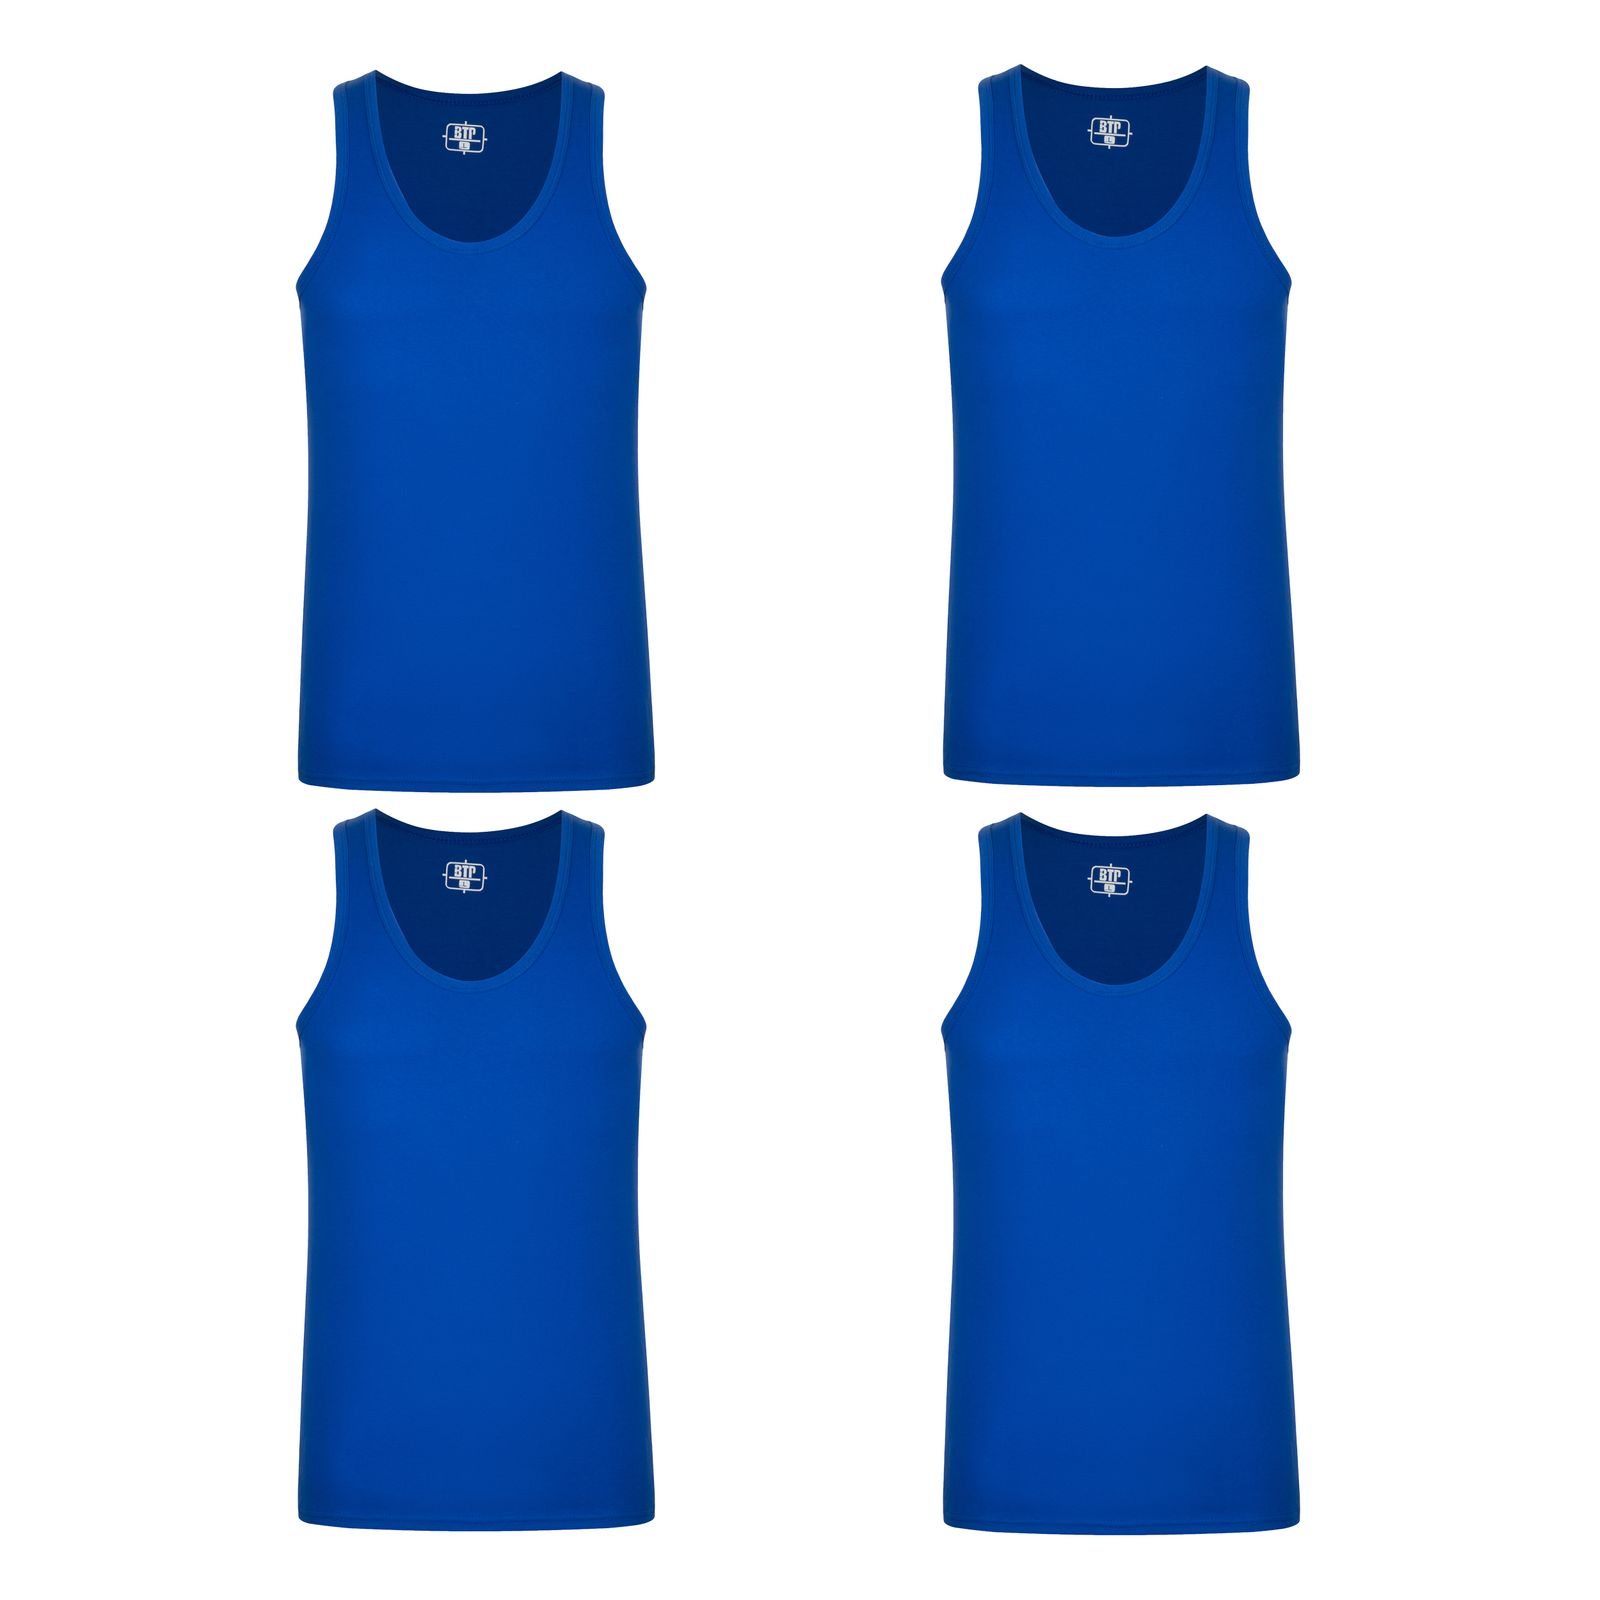 زیرپوش رکابی مردانه برهان تن پوش مدل 14-01 رنگ آبی بسته 4 عددی -  - 1